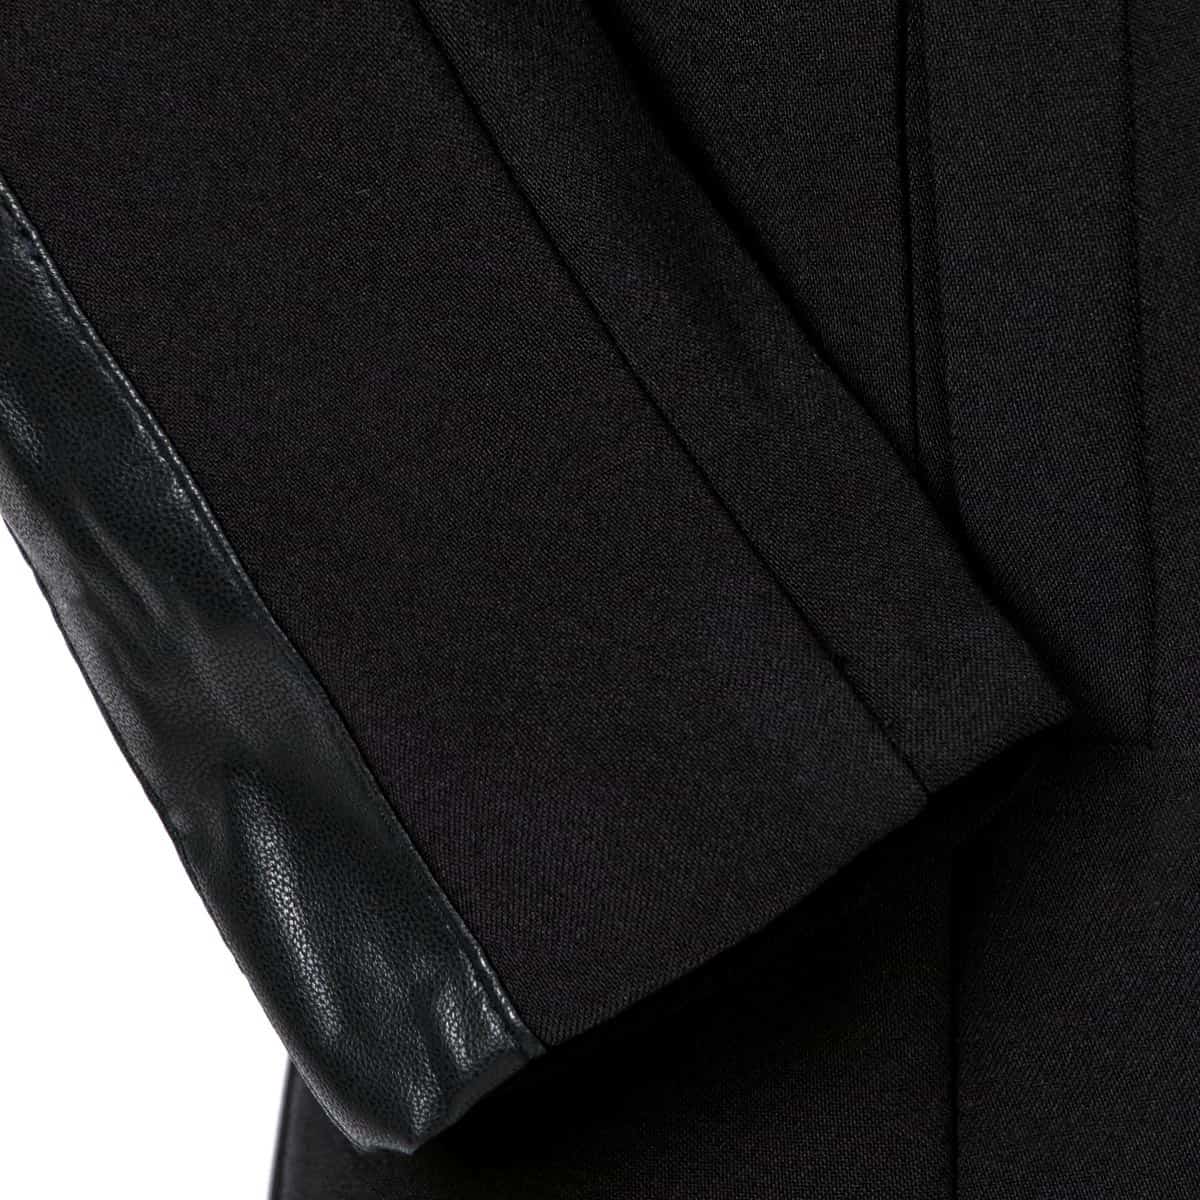 Пиджак Техноткань черного цвета длинный рукав для девочки